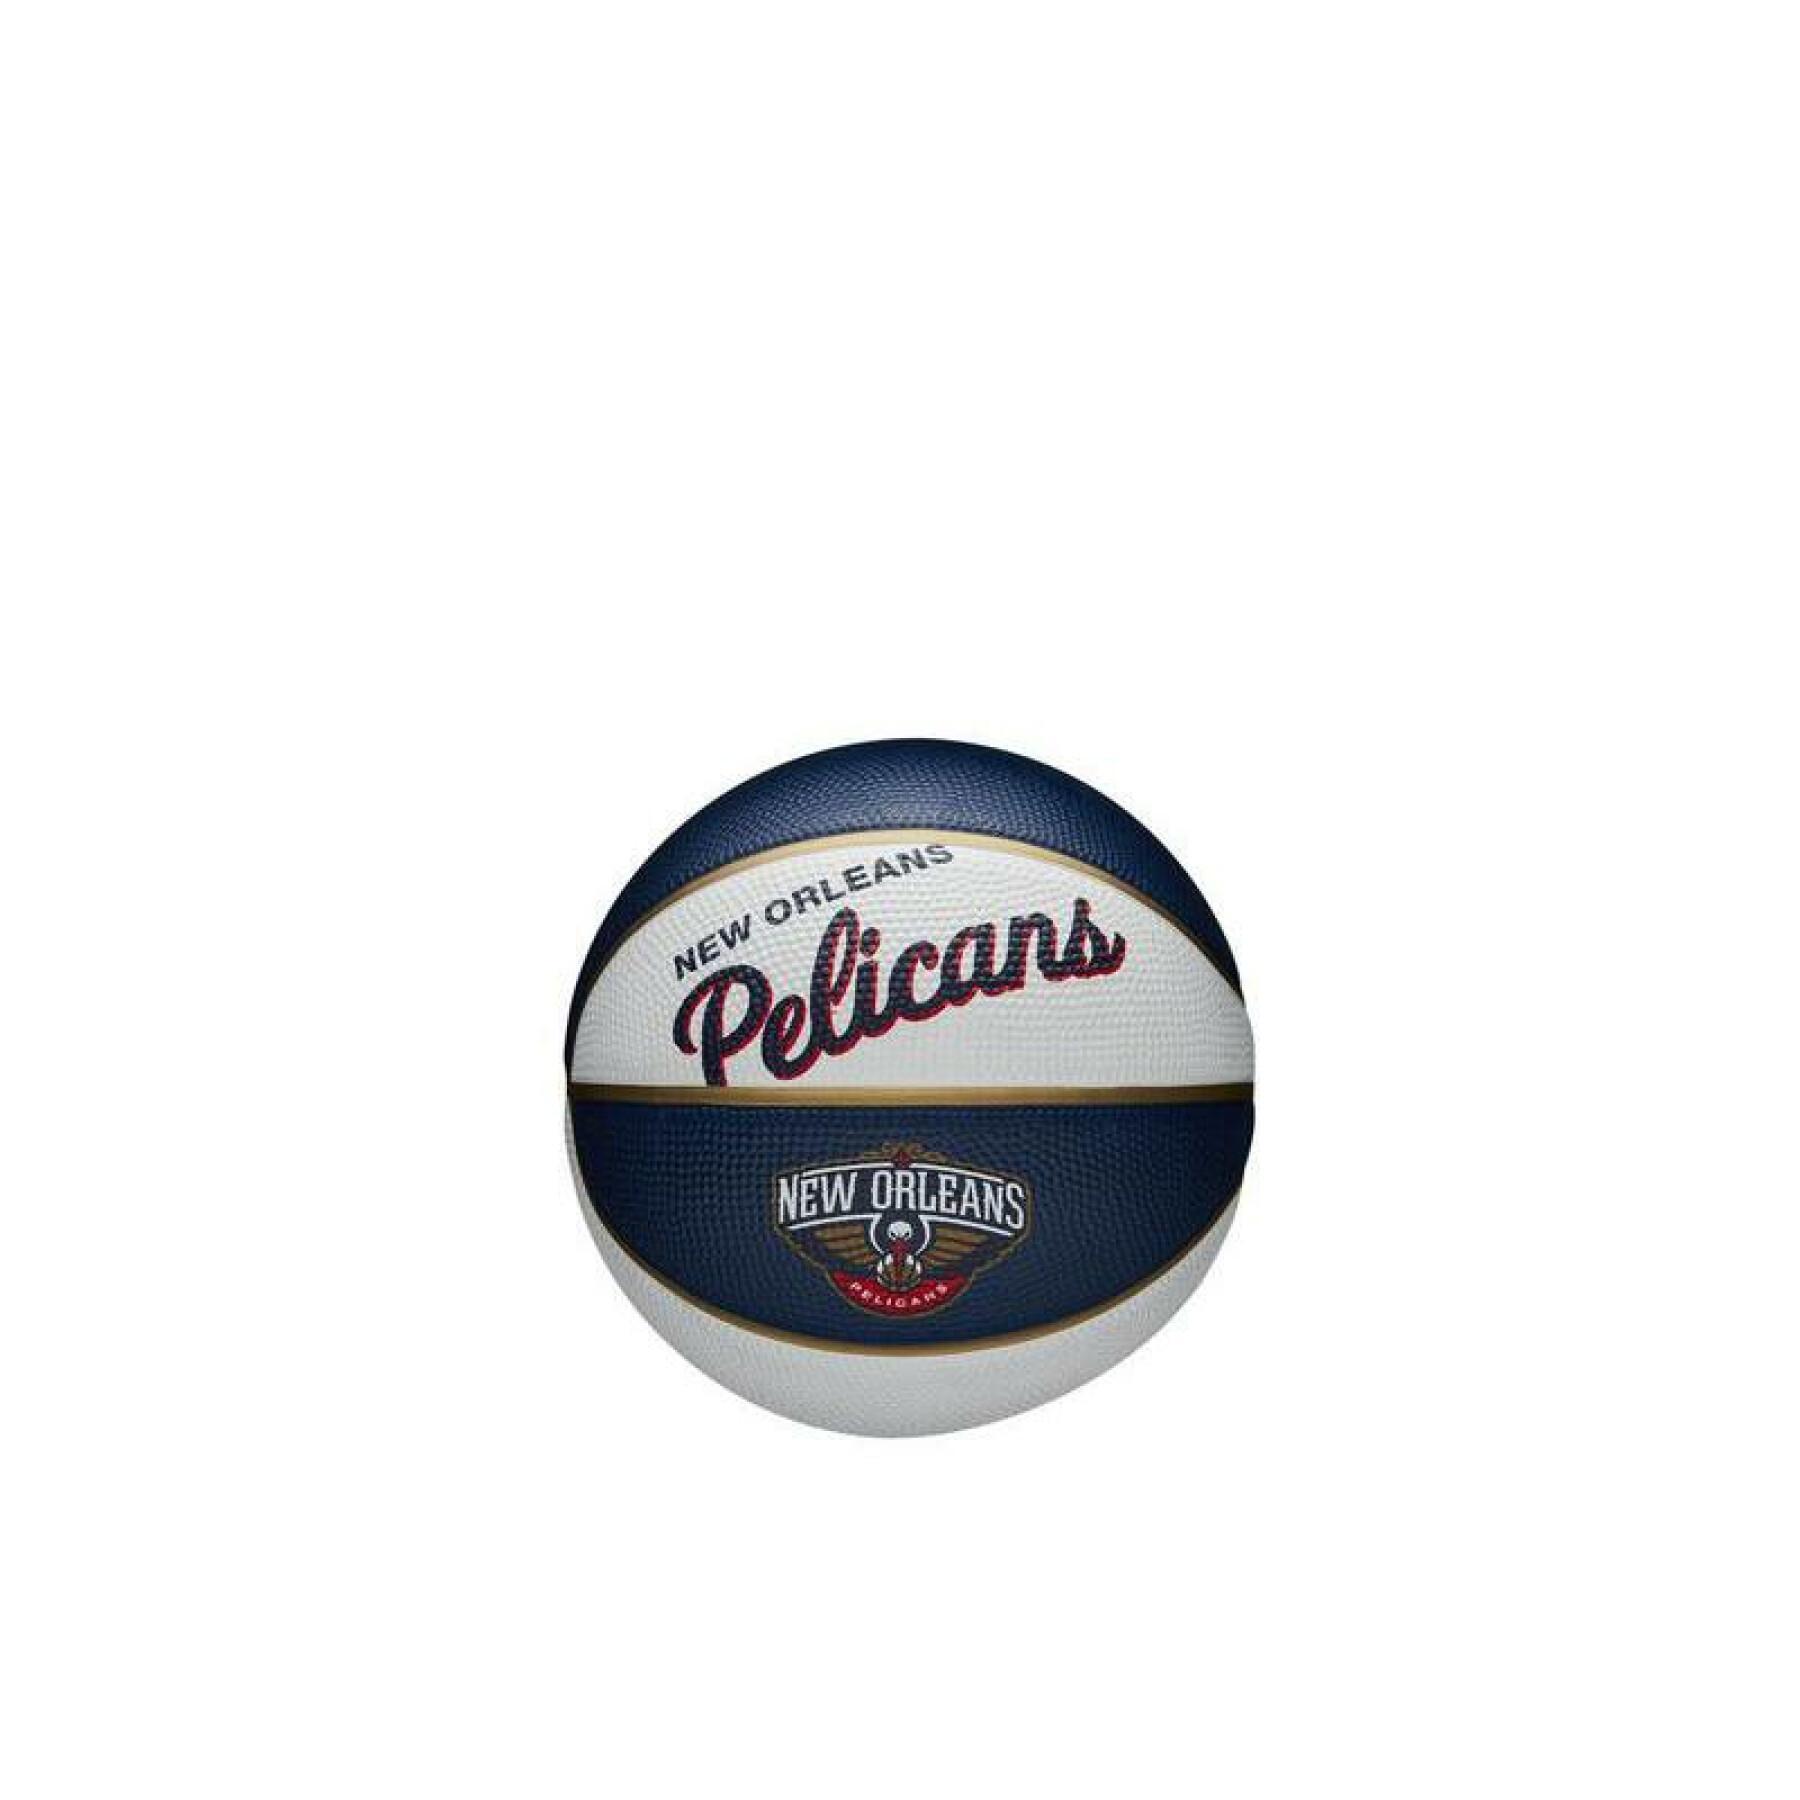 Mini balón retro de la nba New Orleans Pelicans